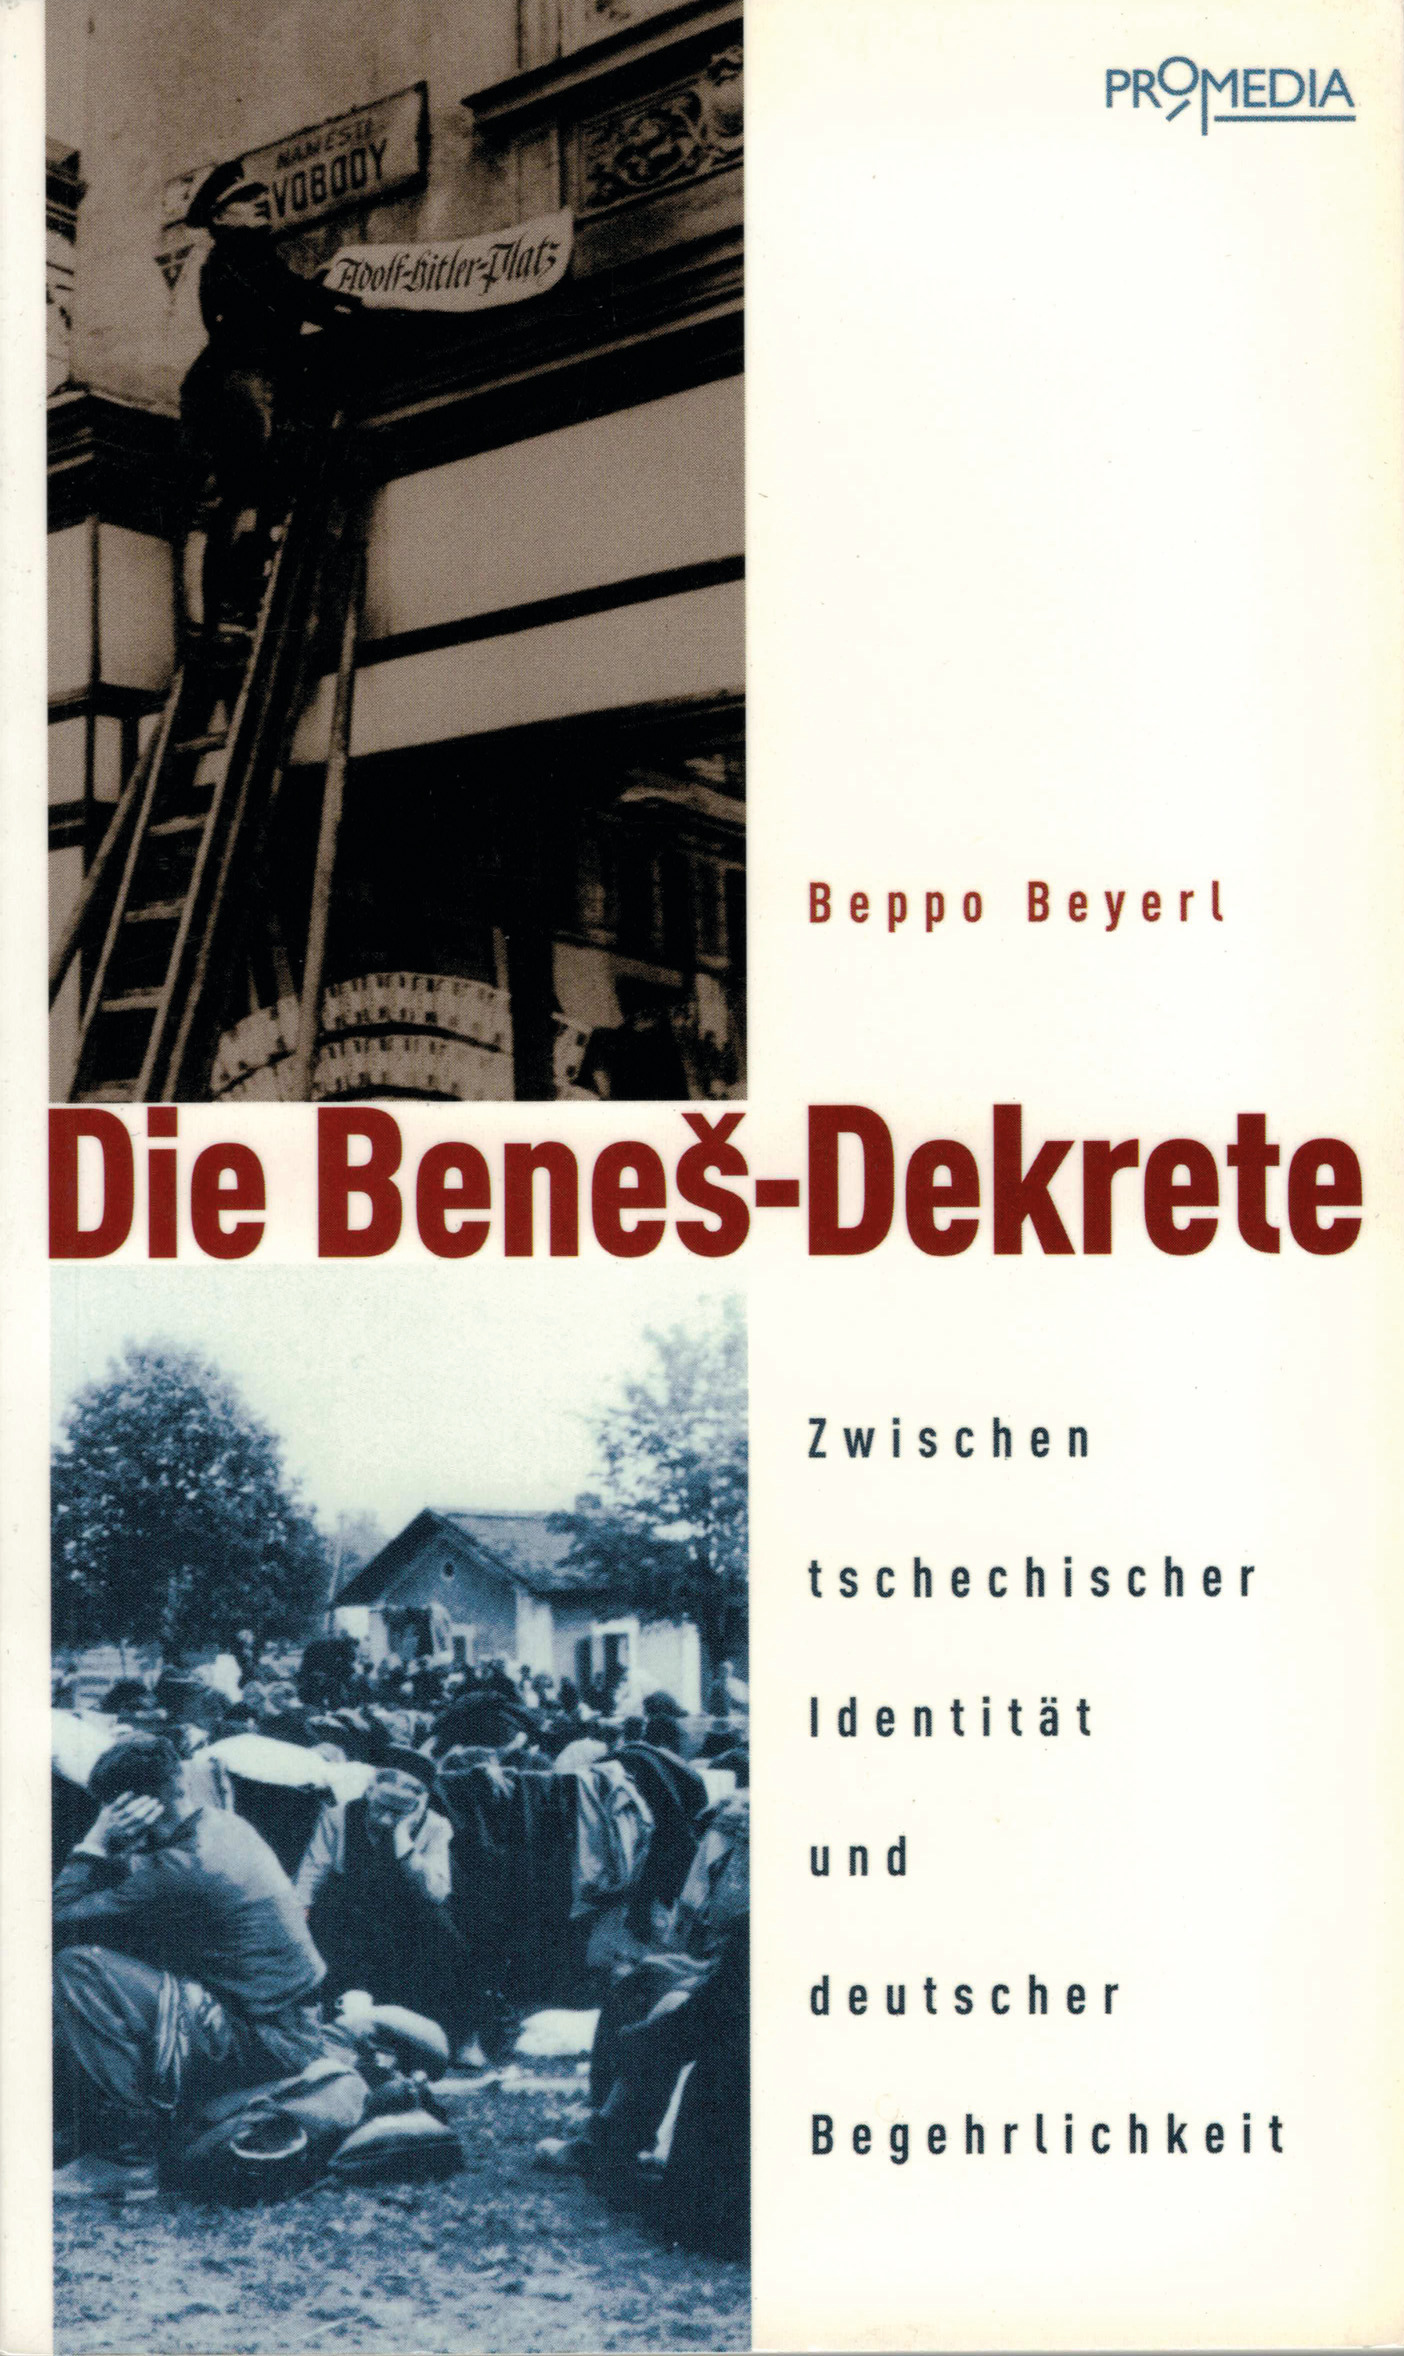 "Die Benes-Dekrete" von Beppo Beyerl